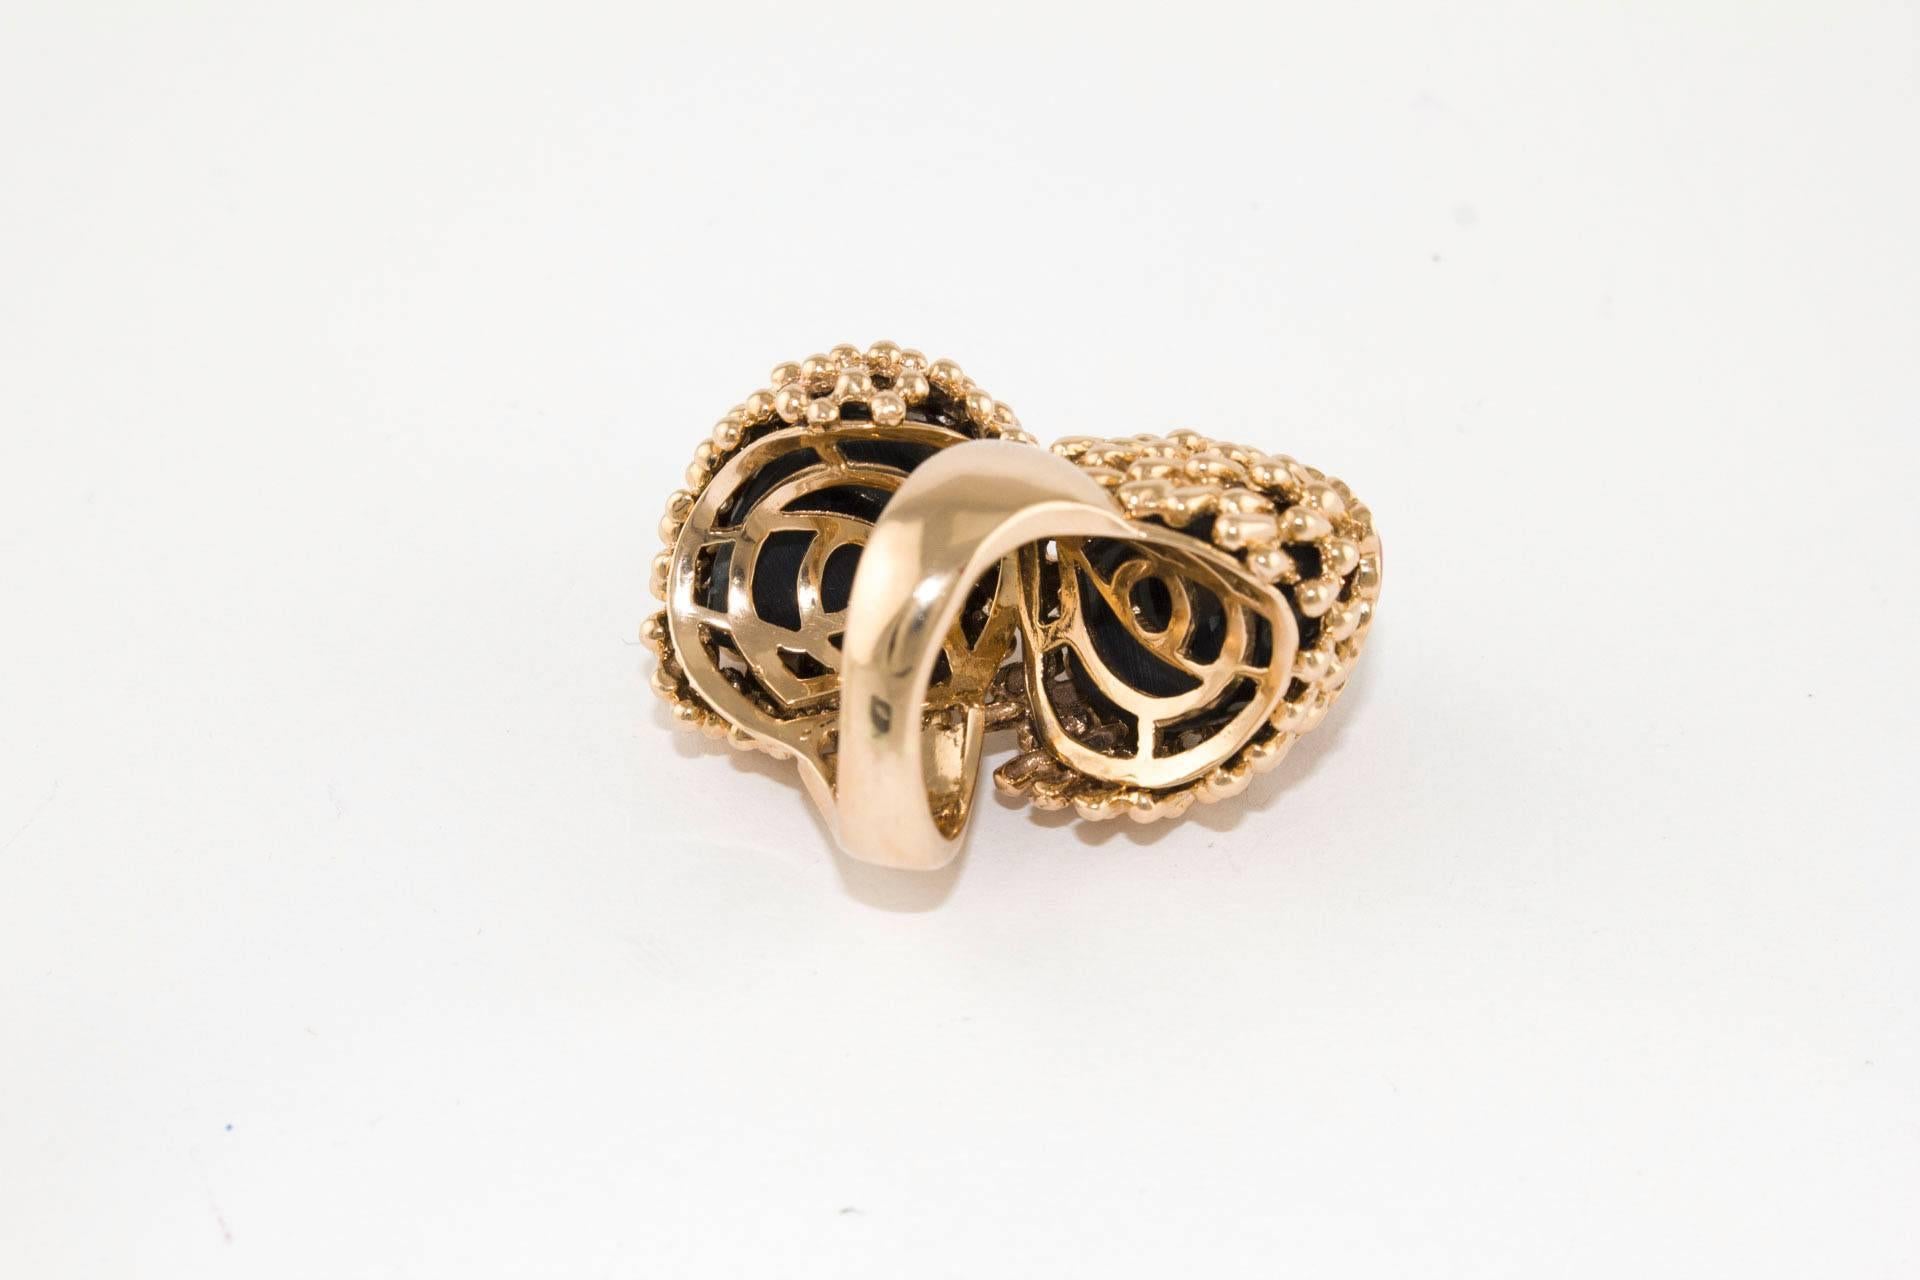 Brilliant Cut Diamonds Corals Sapphire Ebony  Rose Gold Ring   For Sale